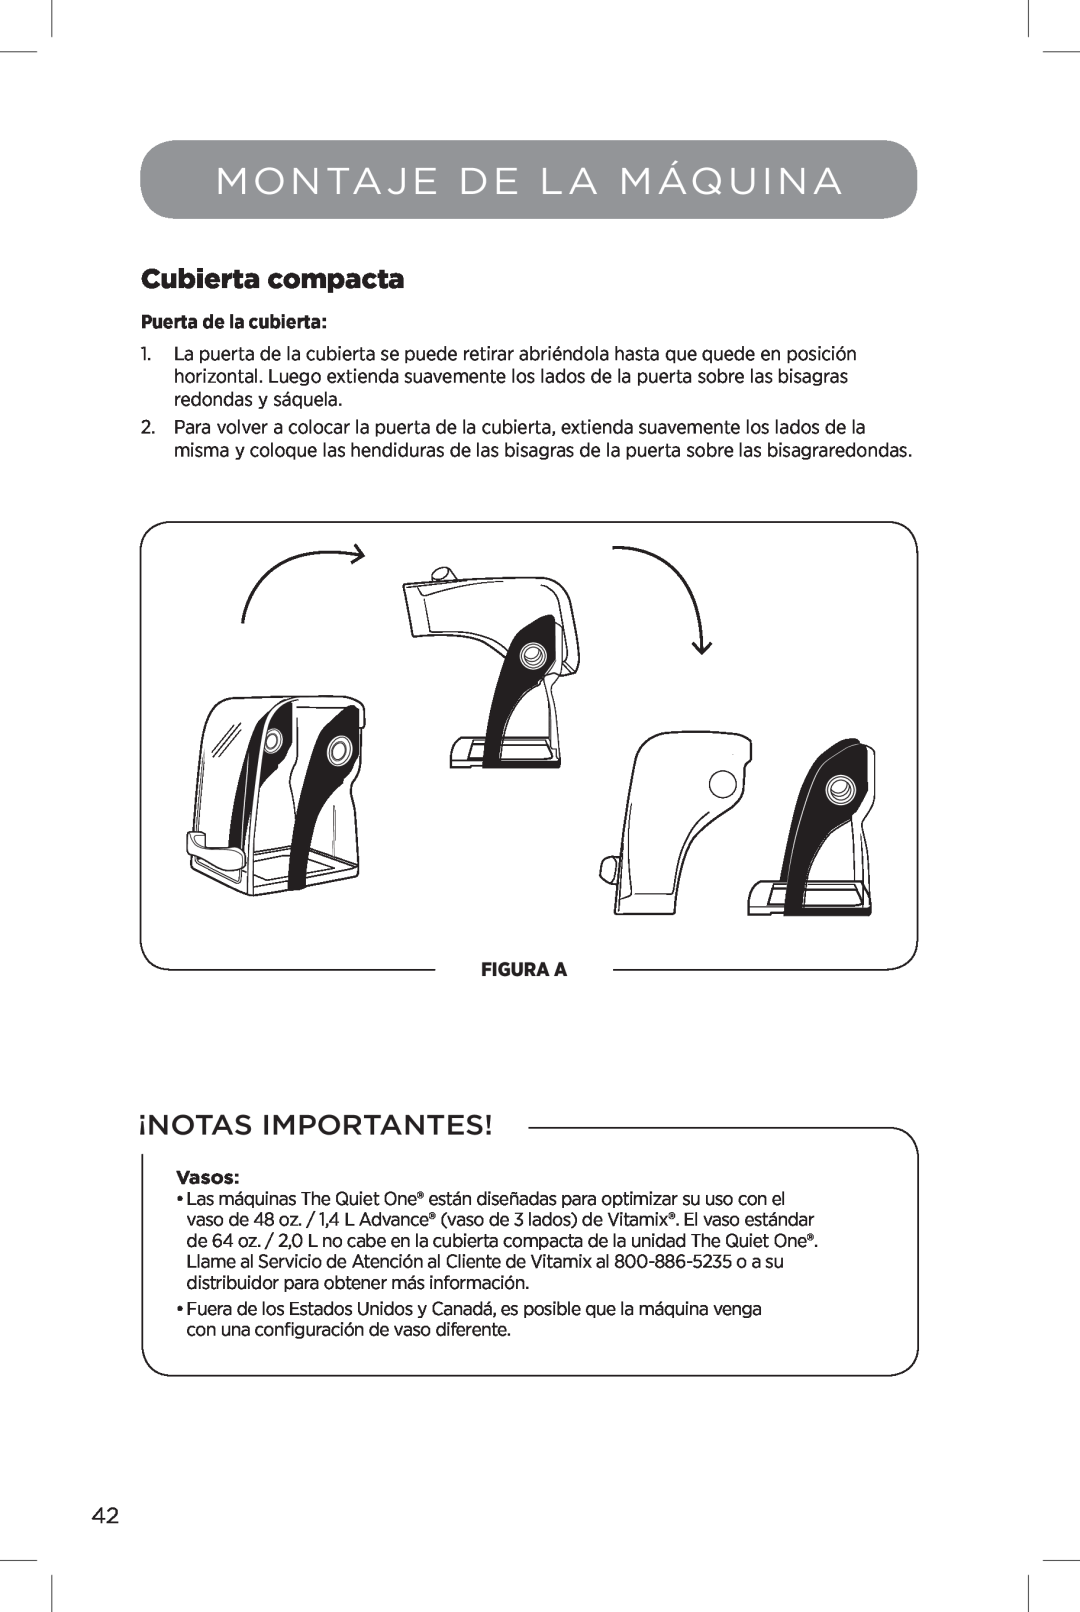 Vita-Mix The Quiet One manual Montaje De La Máquina, Cubierta compacta, Figura A, ¡Notas Importantes, Puerta de la cubierta 